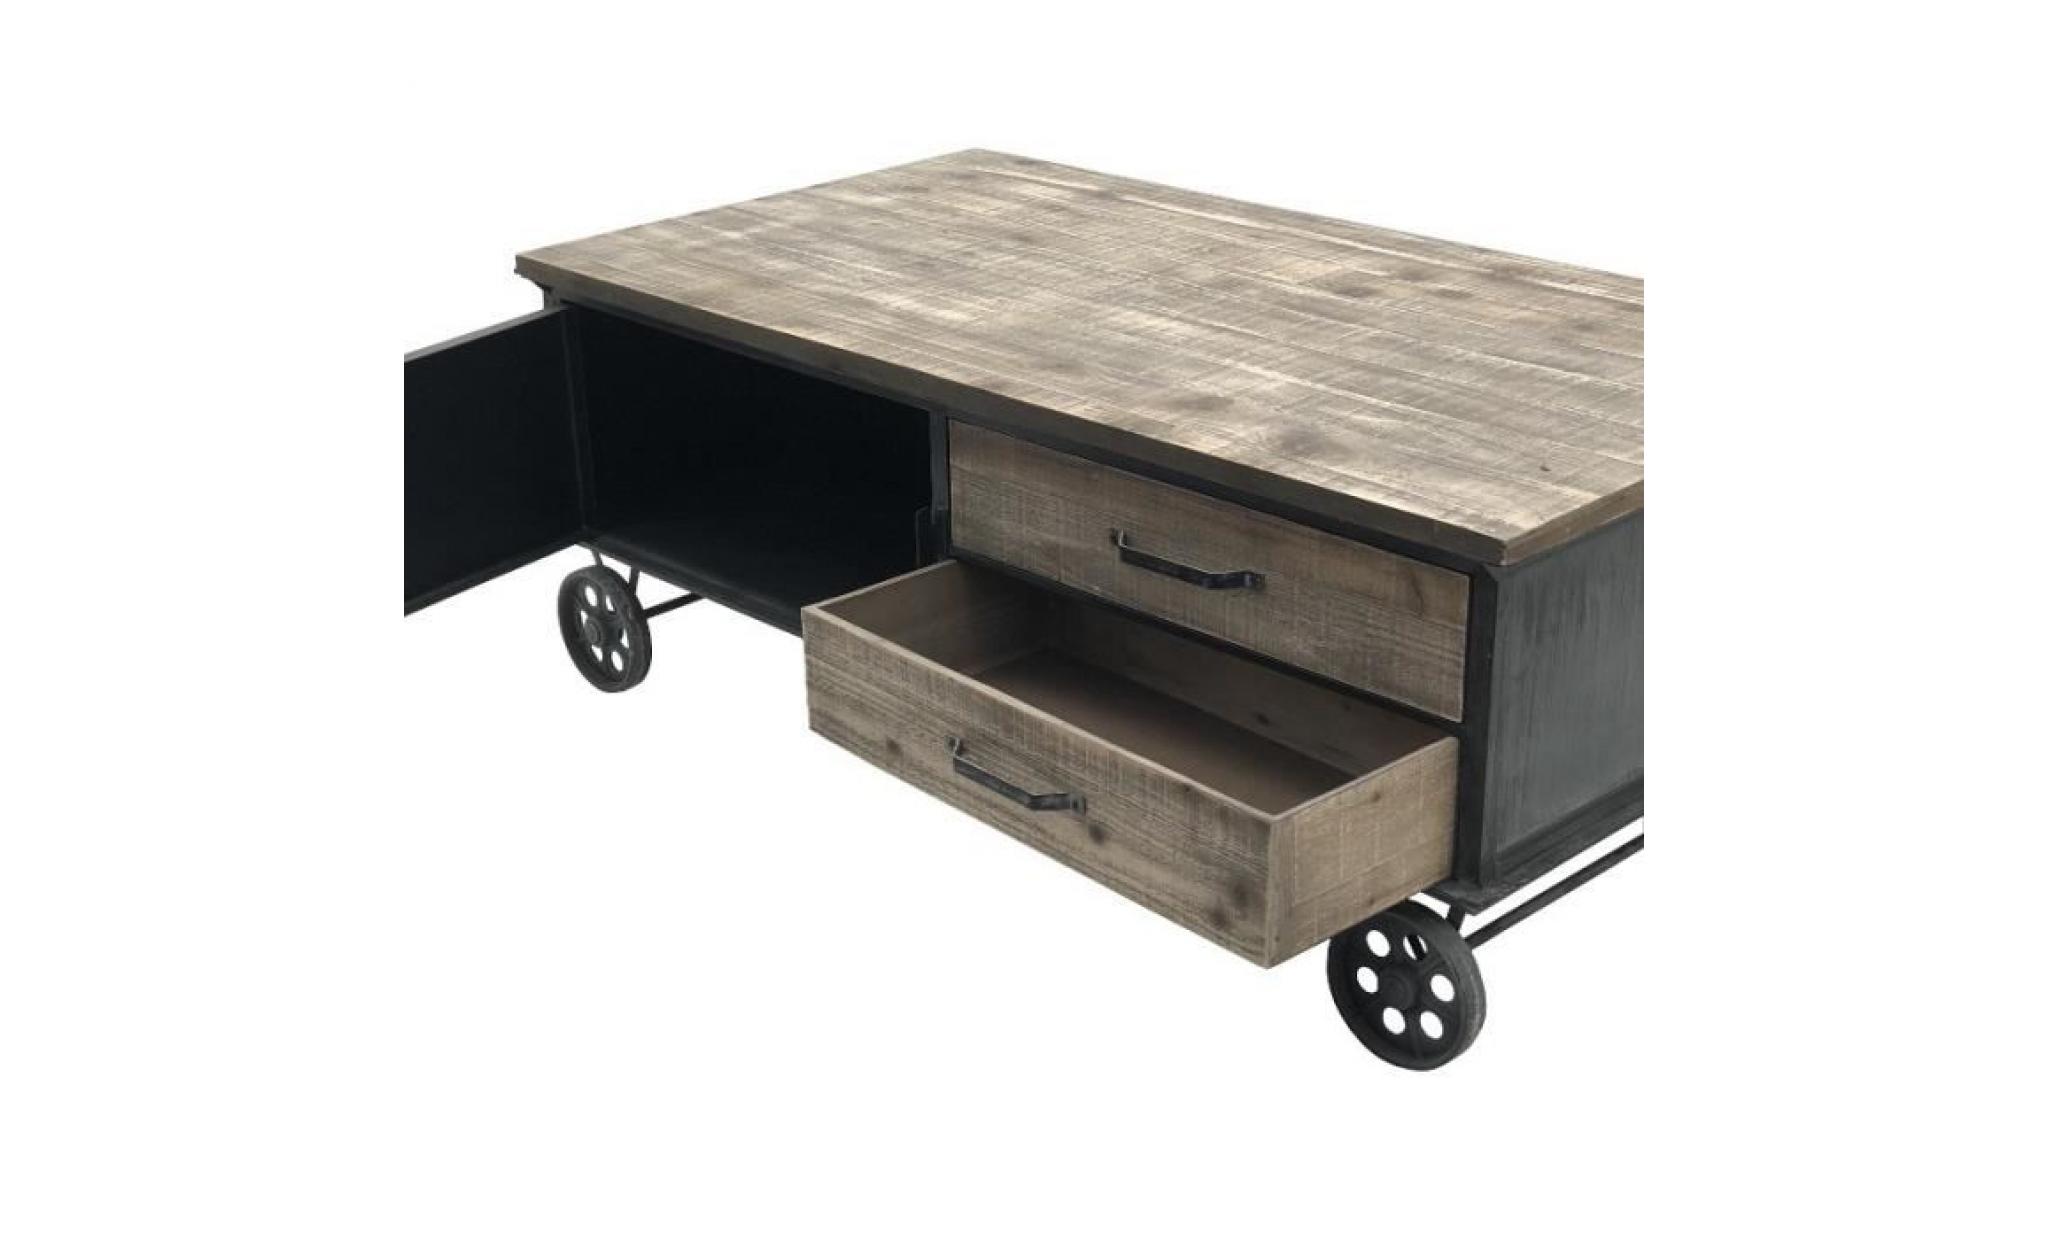 table basse en fer bois sur roulettes industriel 100 cm x 60 cm   14006 table pas cher